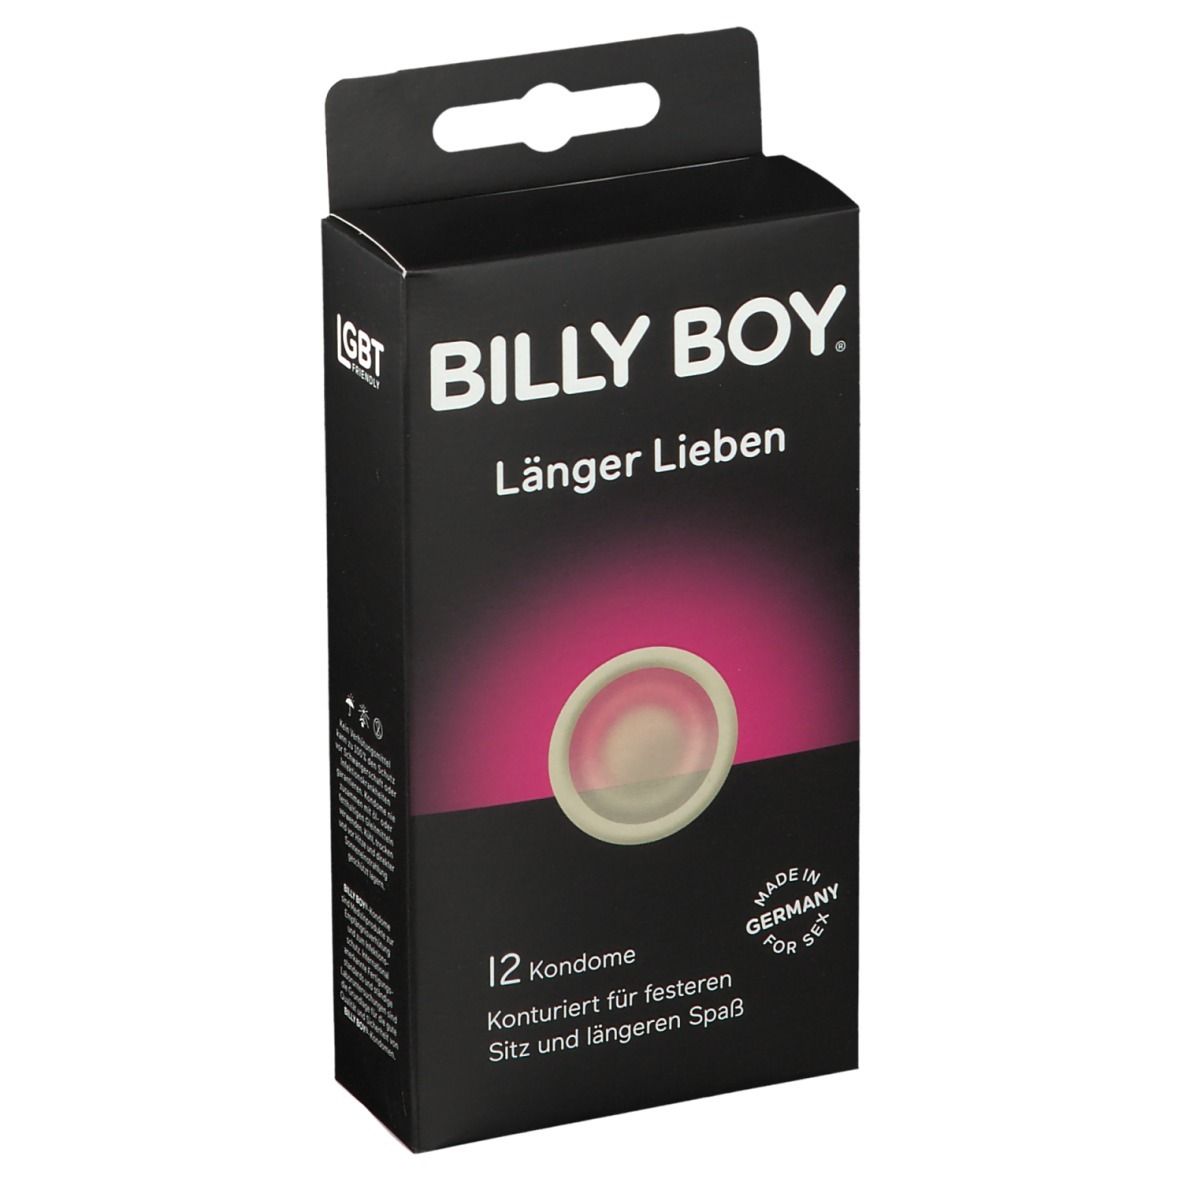 Lieben billy test länger boy Kondom Test